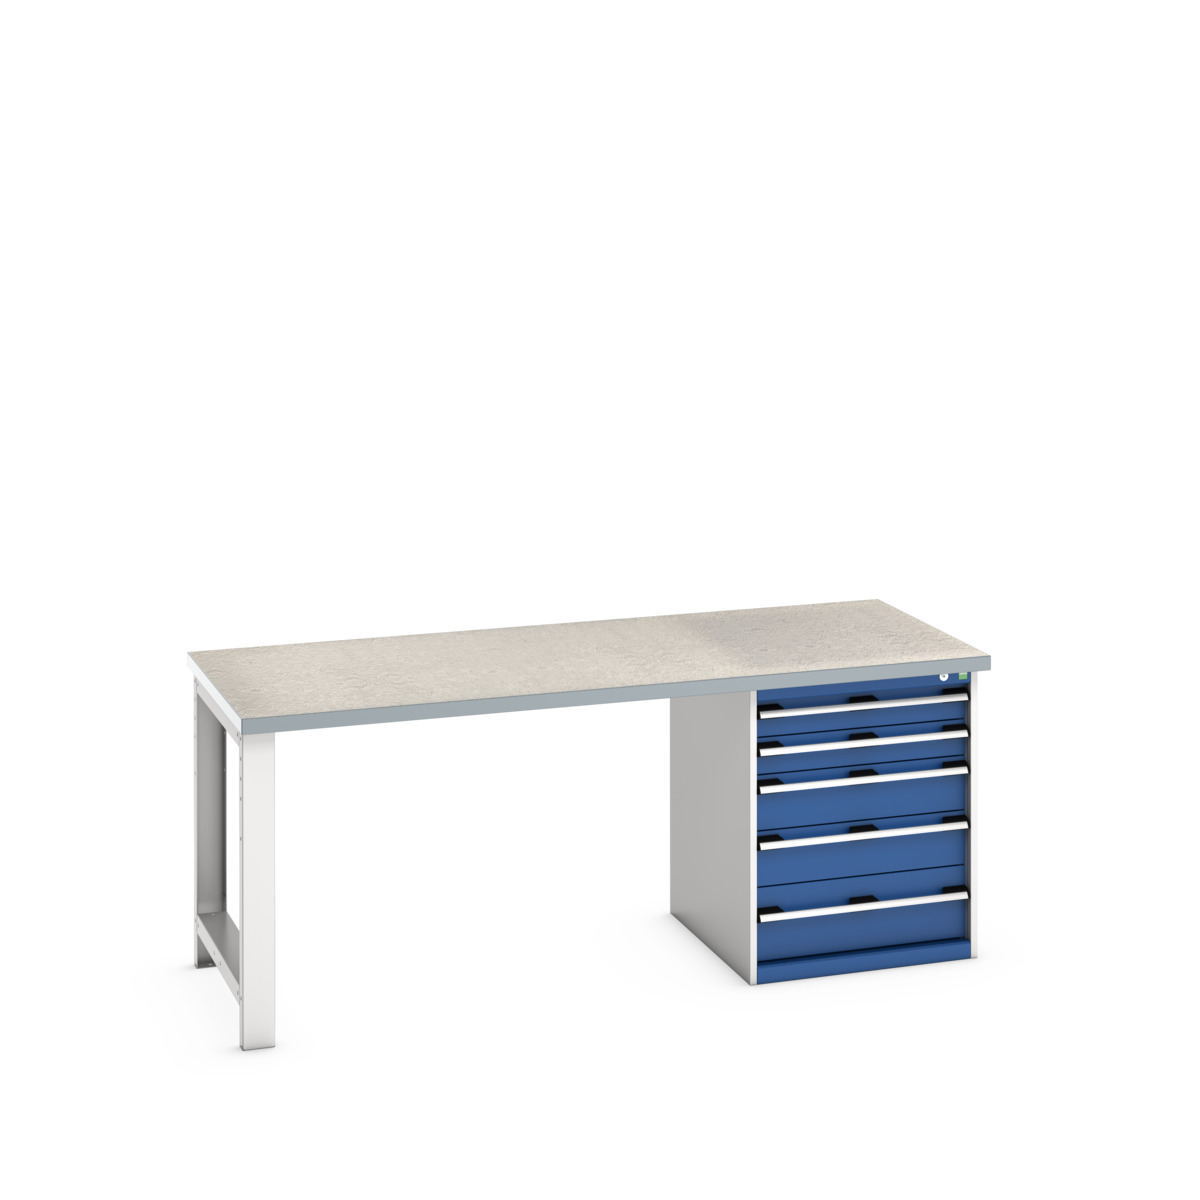 41004112.11V - cubio pedestal bench (lino)